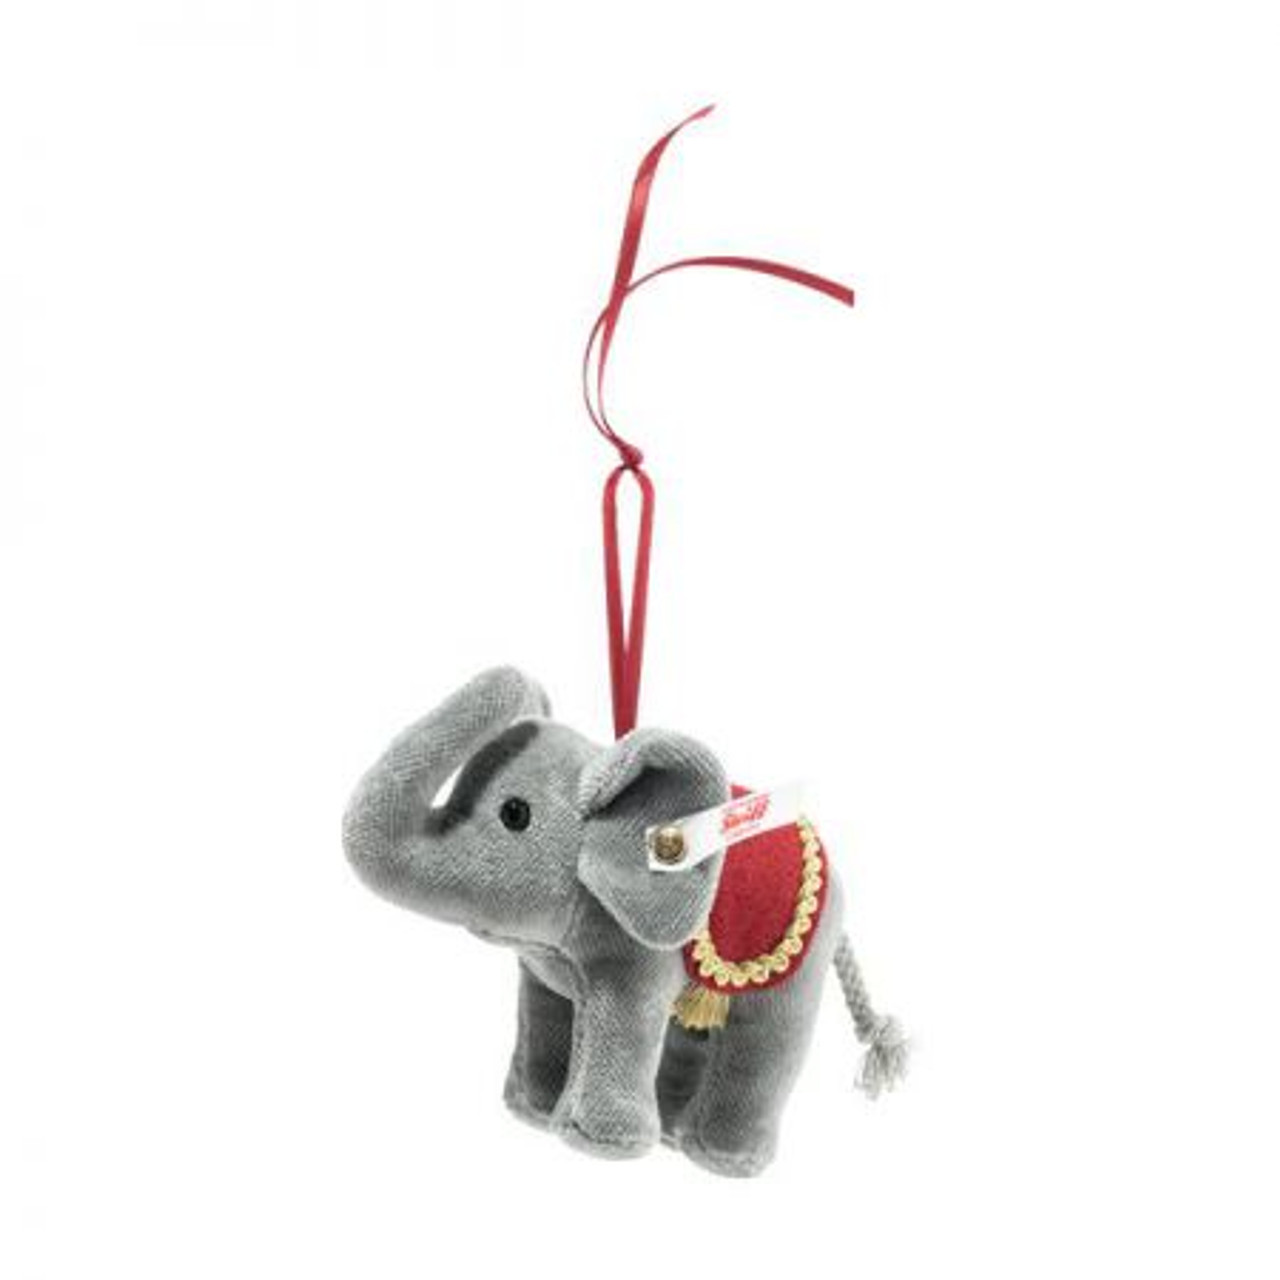 Steiff 2020 Christmas Elephant Ornament